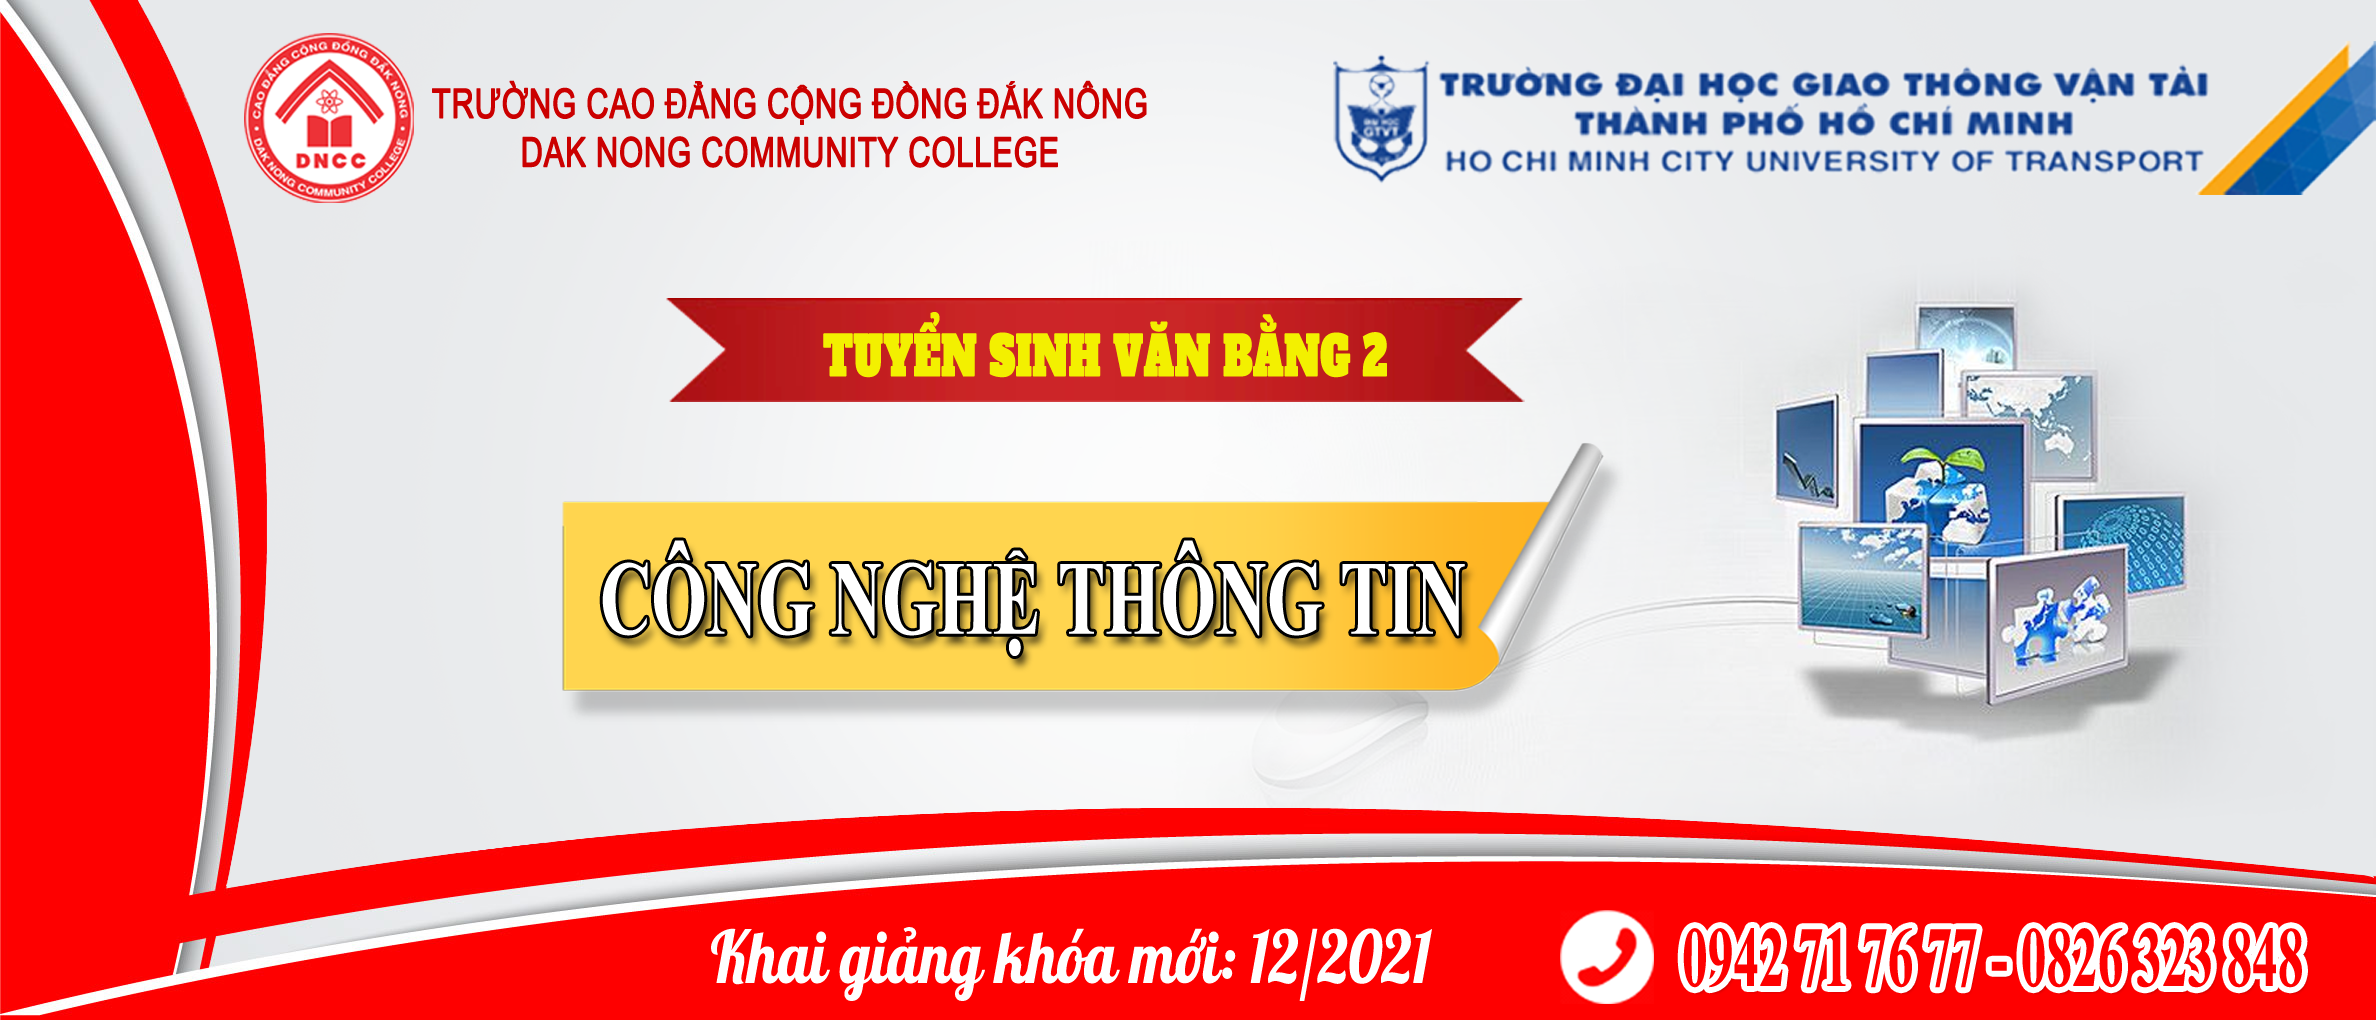 Trường Cao đẳng Cộng đồng Đắk Nông liên kết với trường Trường Đại học Giao thông Vận tải HCM mở lớp Đại học Công nghệ Thông tin - hệ vừa làm vừa học, học tại Đắk Nông